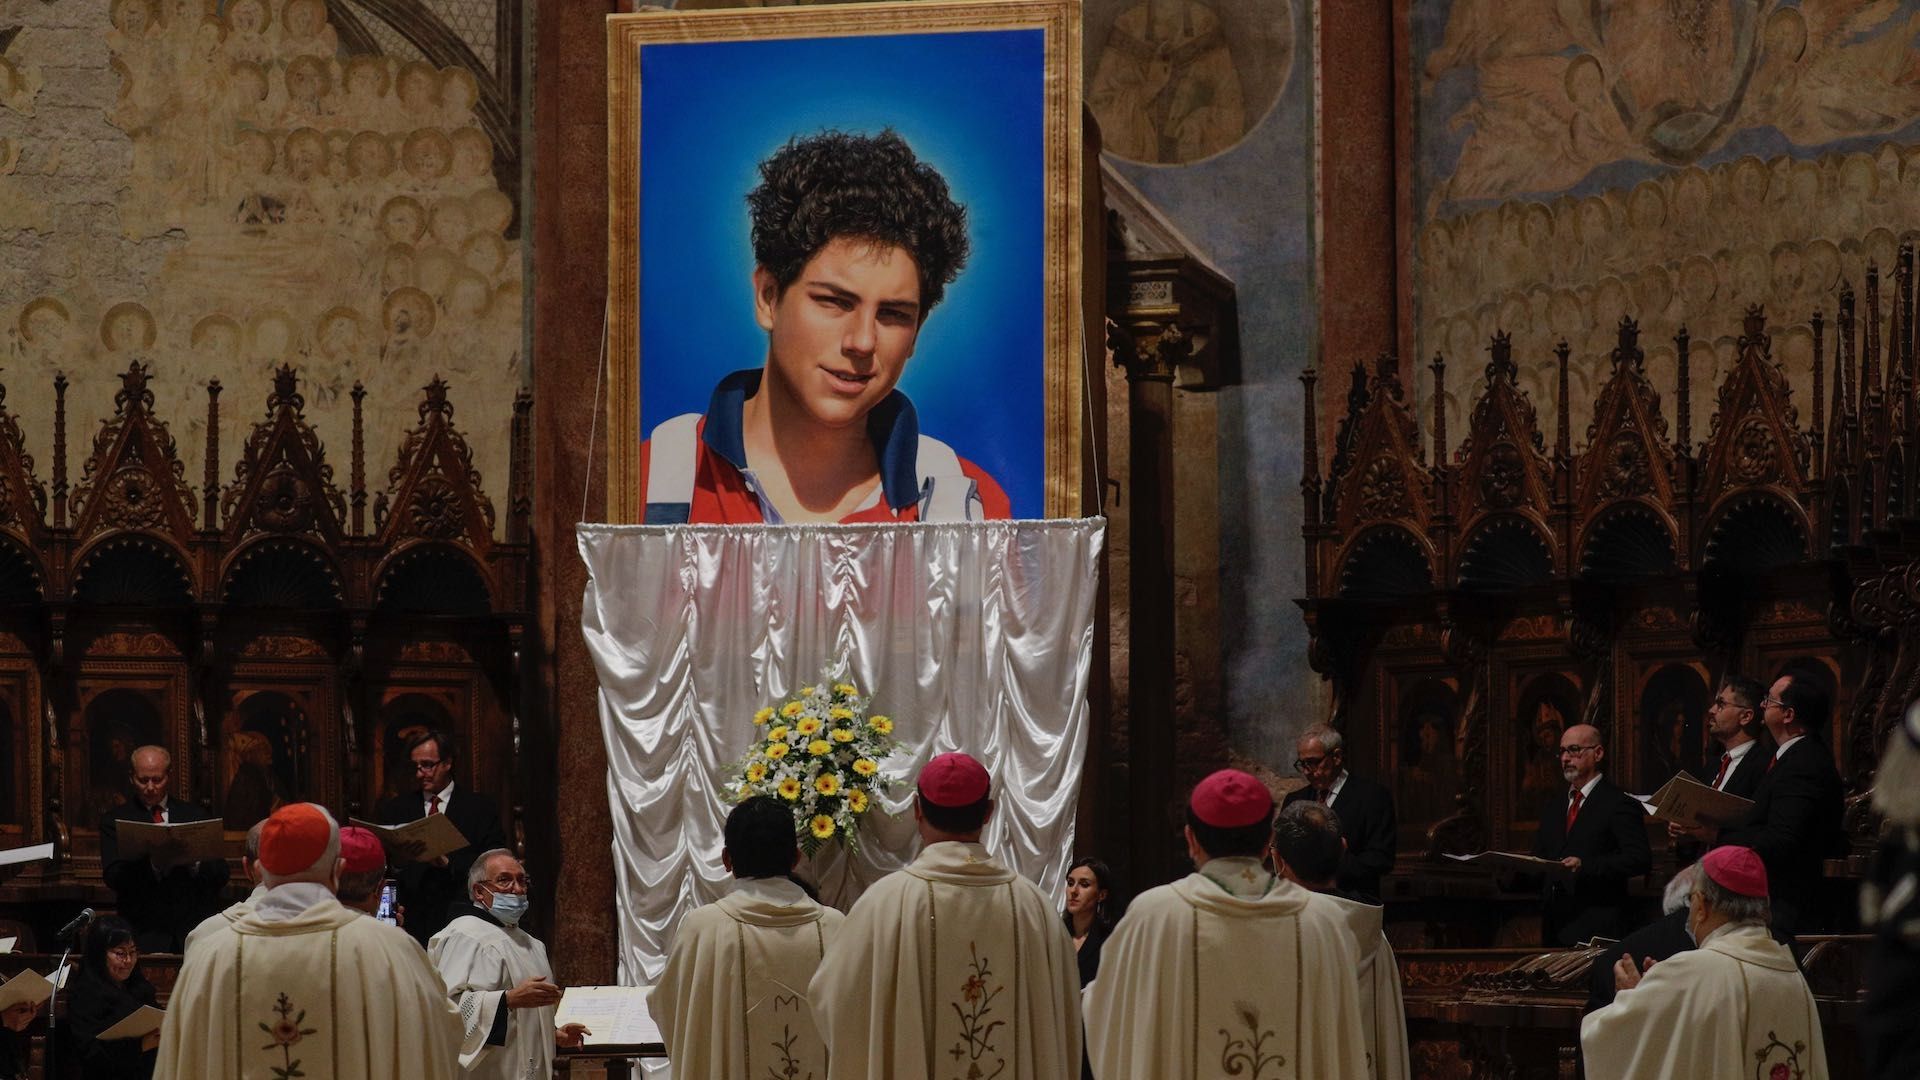 Carlo Acutis, joven de quince años fallecido en 2006, será canonizado